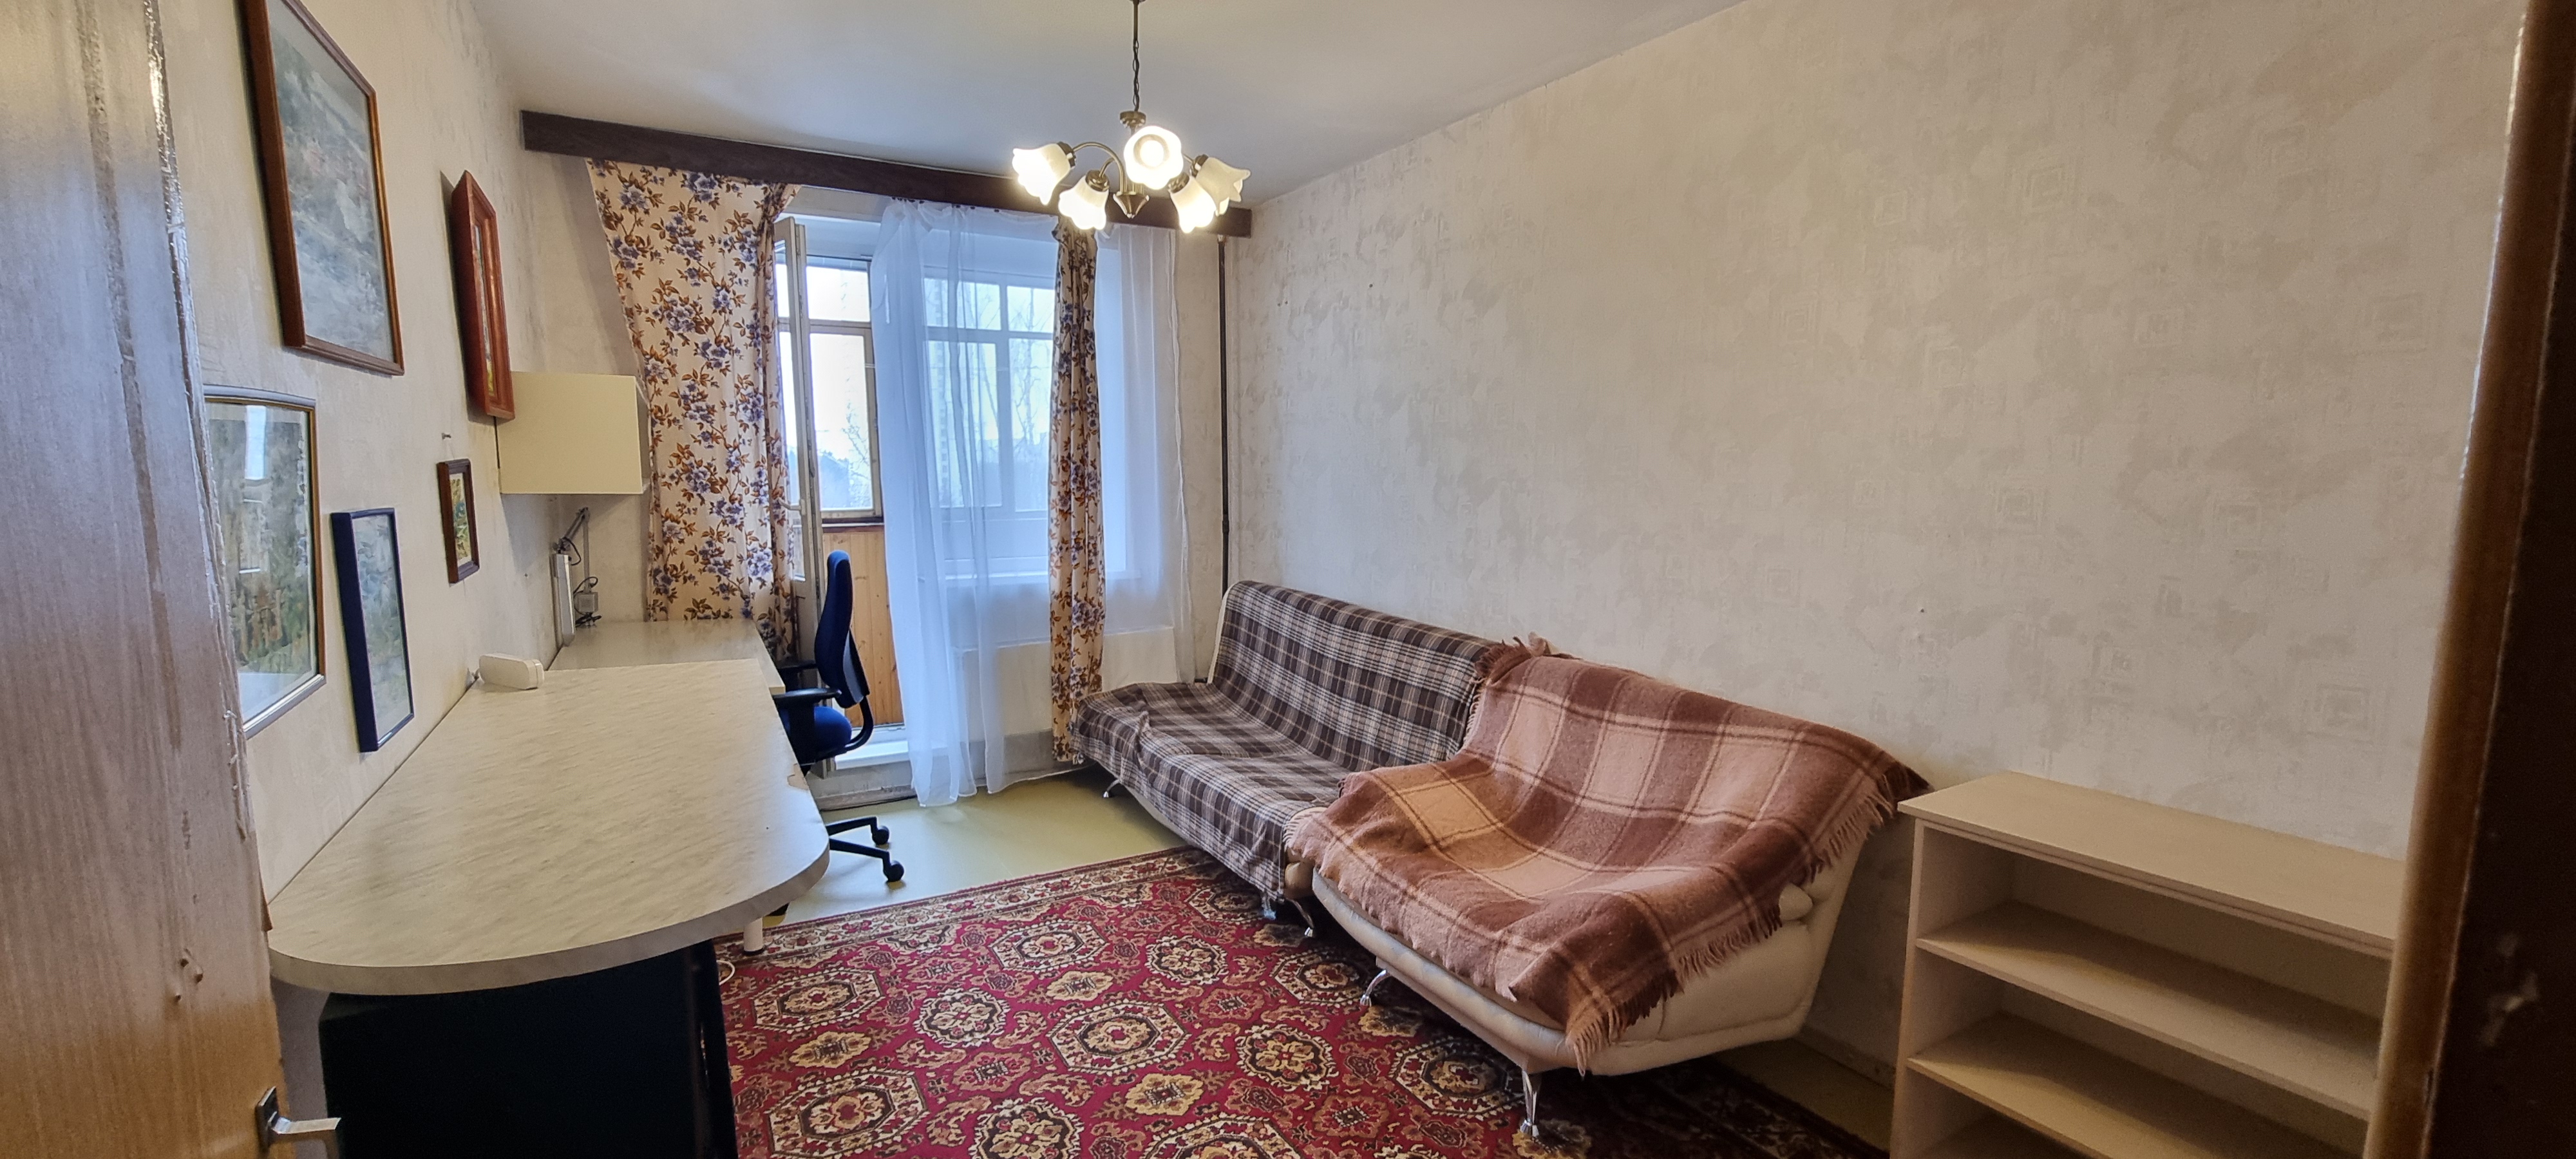 Продажа 2-комнатной квартиры, Зеленоград, 1208